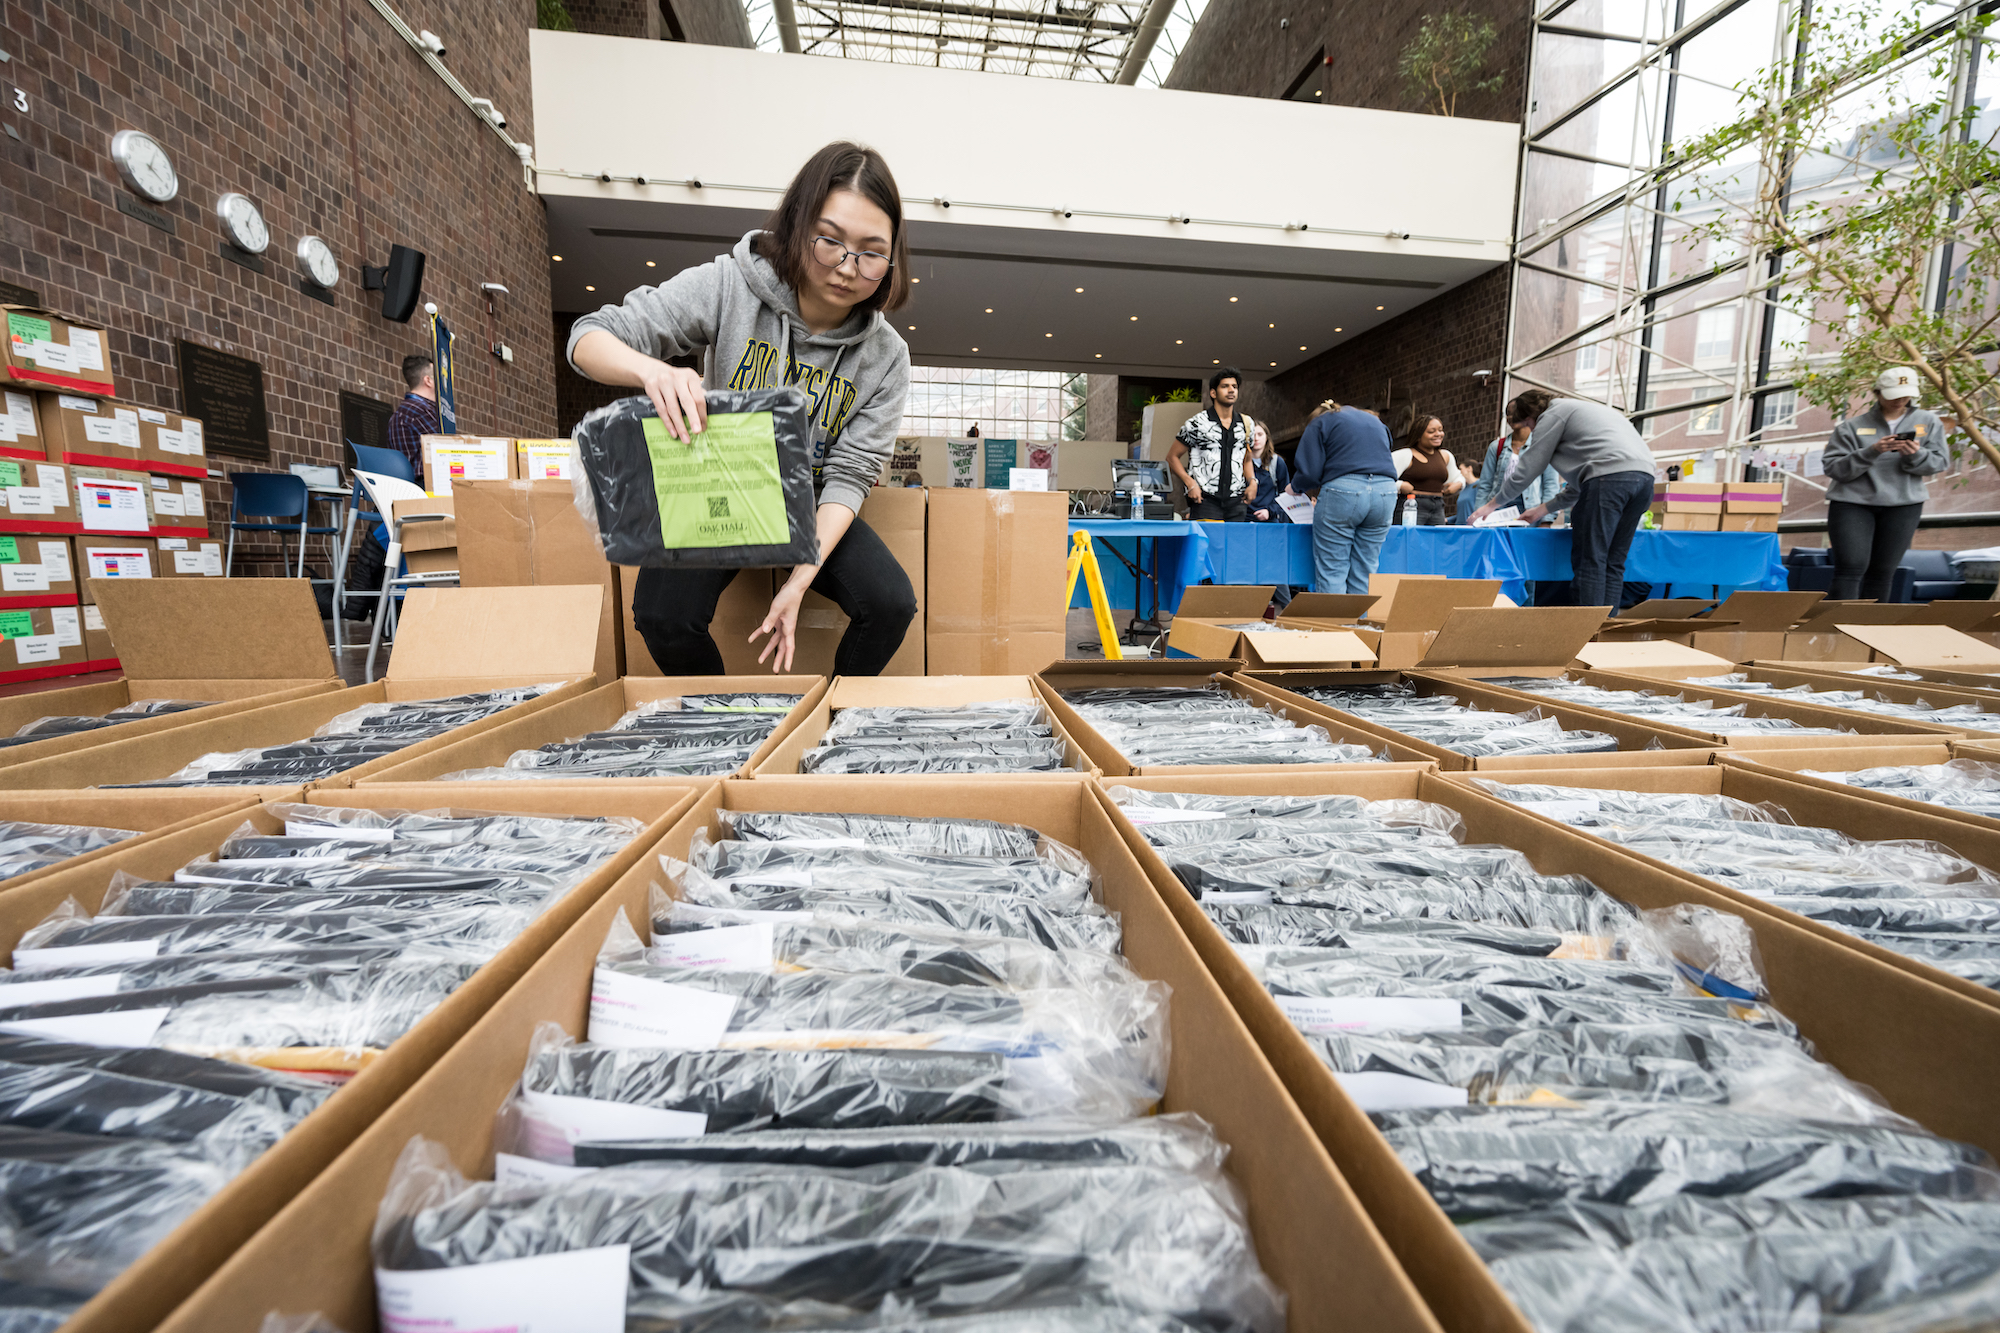 Student employee sorts through boxes of regalia